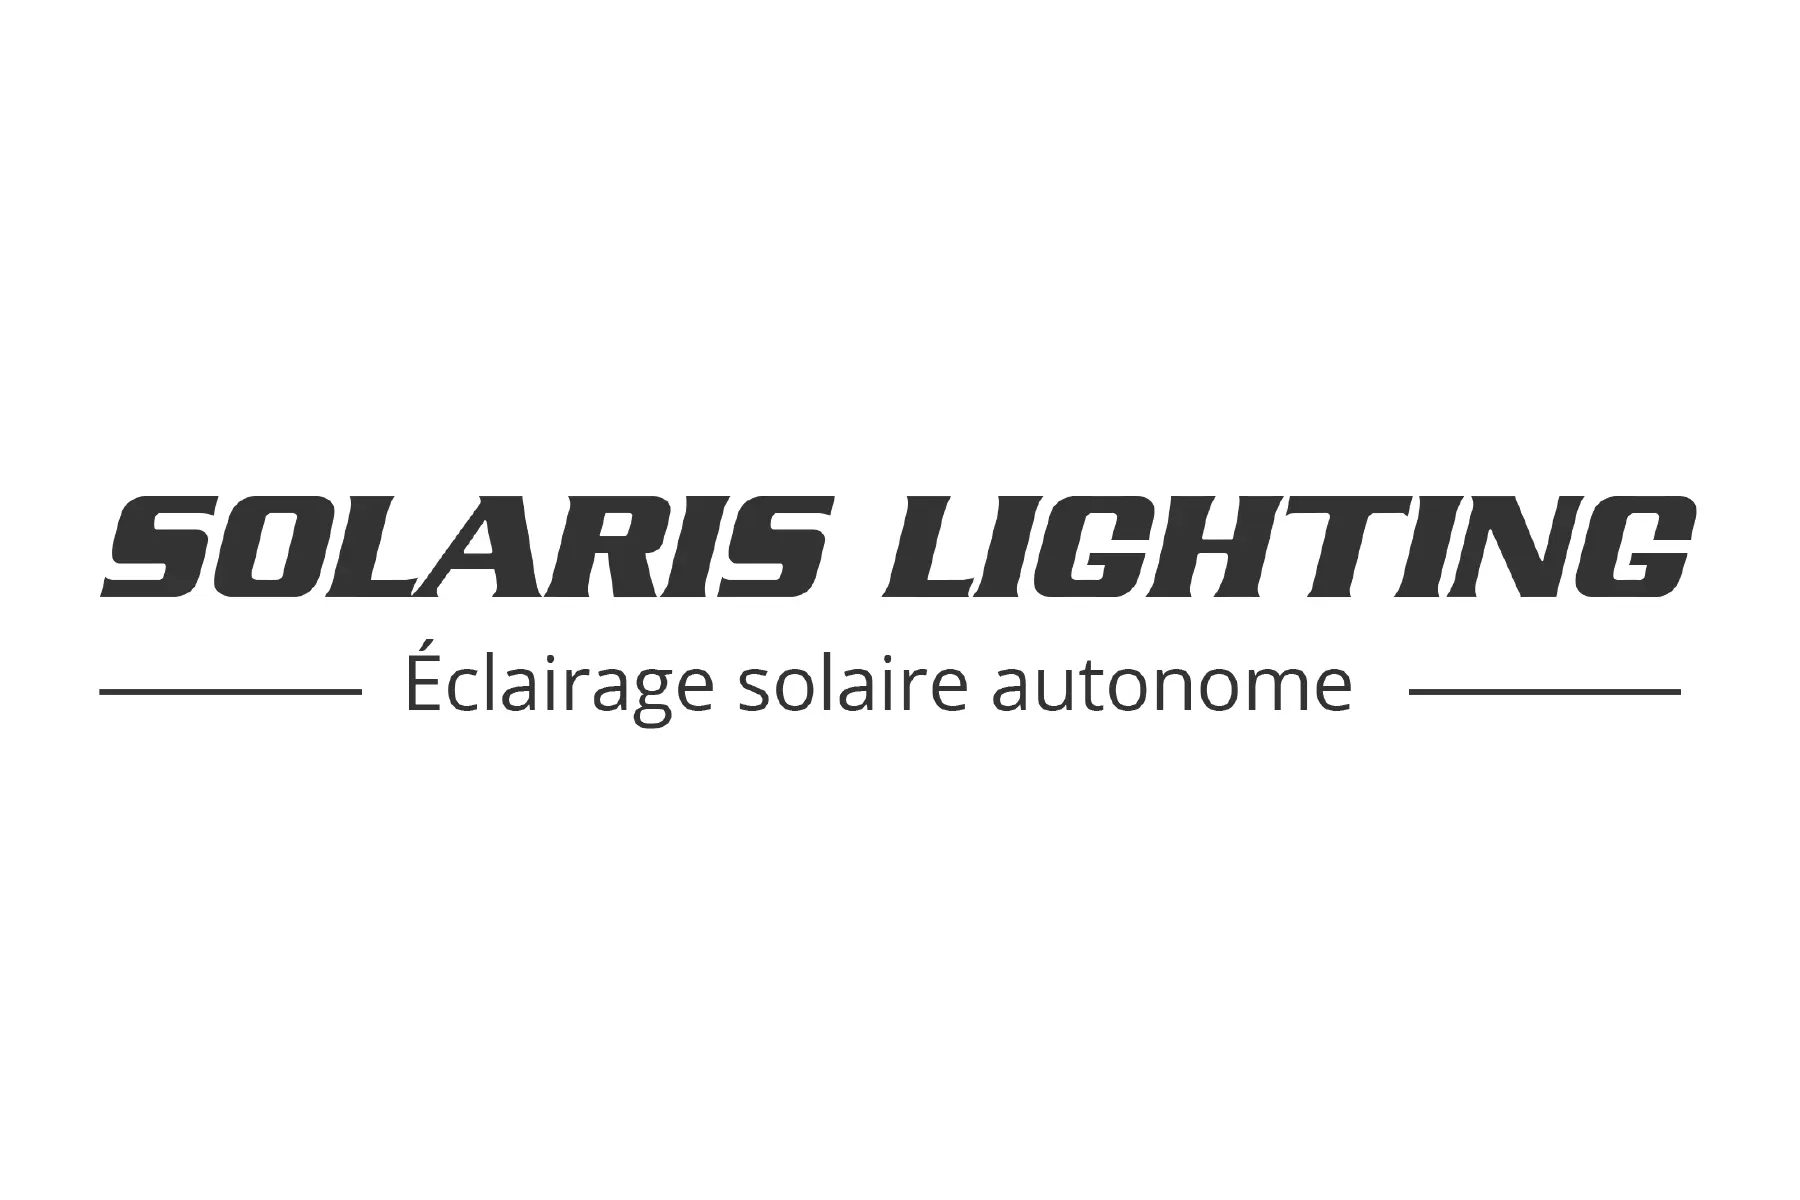 SOLARIS LIGHTING Spécialiste de l'éclairage solaire autonome à
                    Trévoux